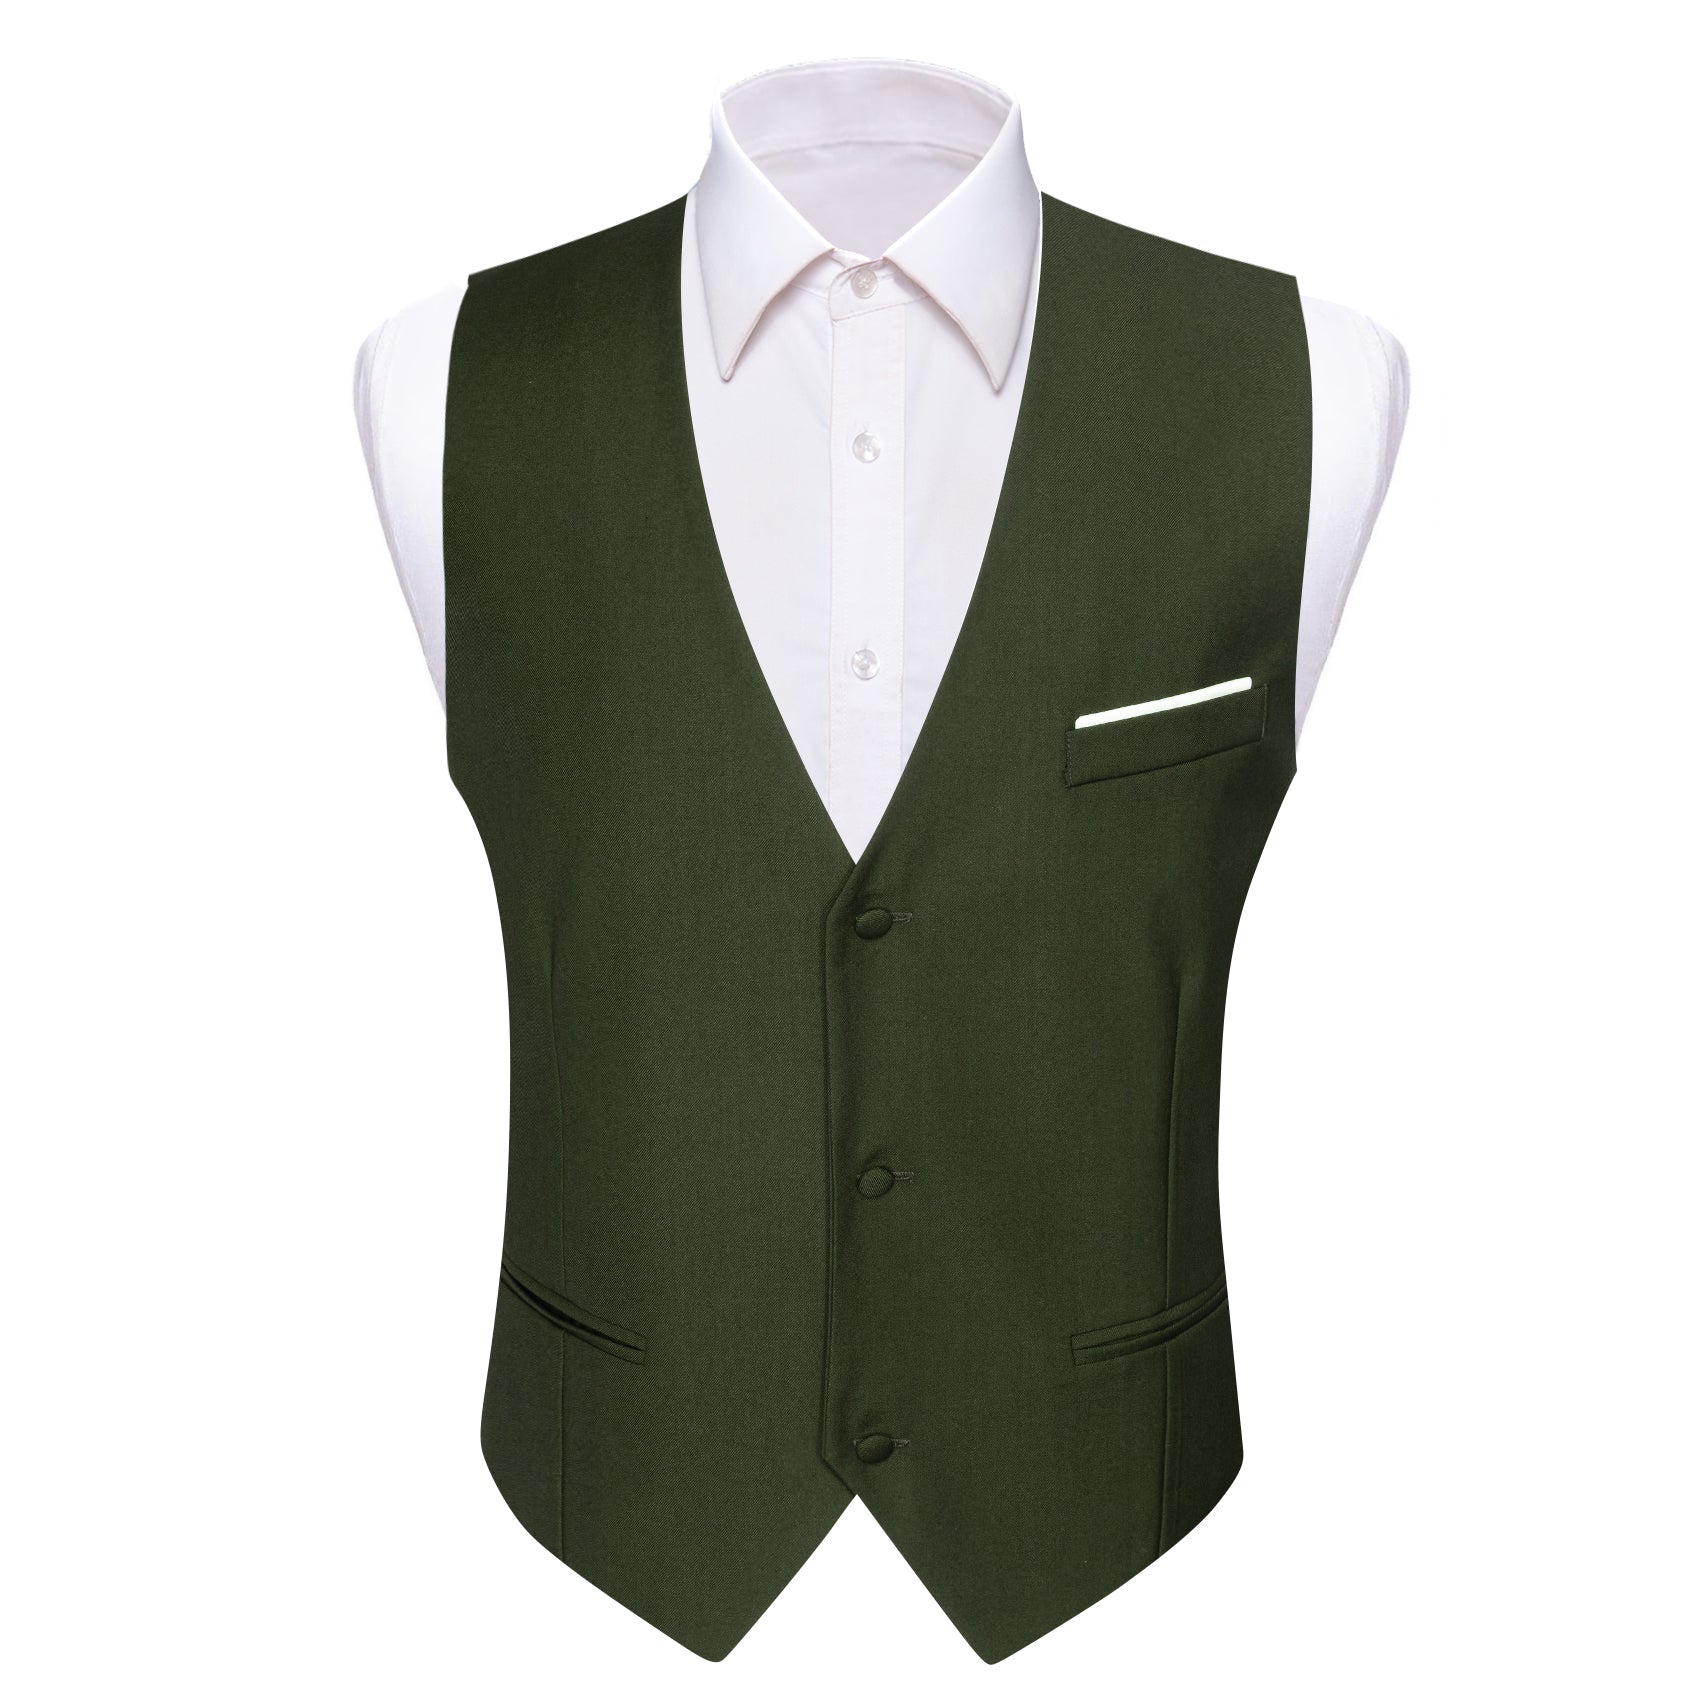 Olive Green Solid V-Neck Waistcoat Suit Vest